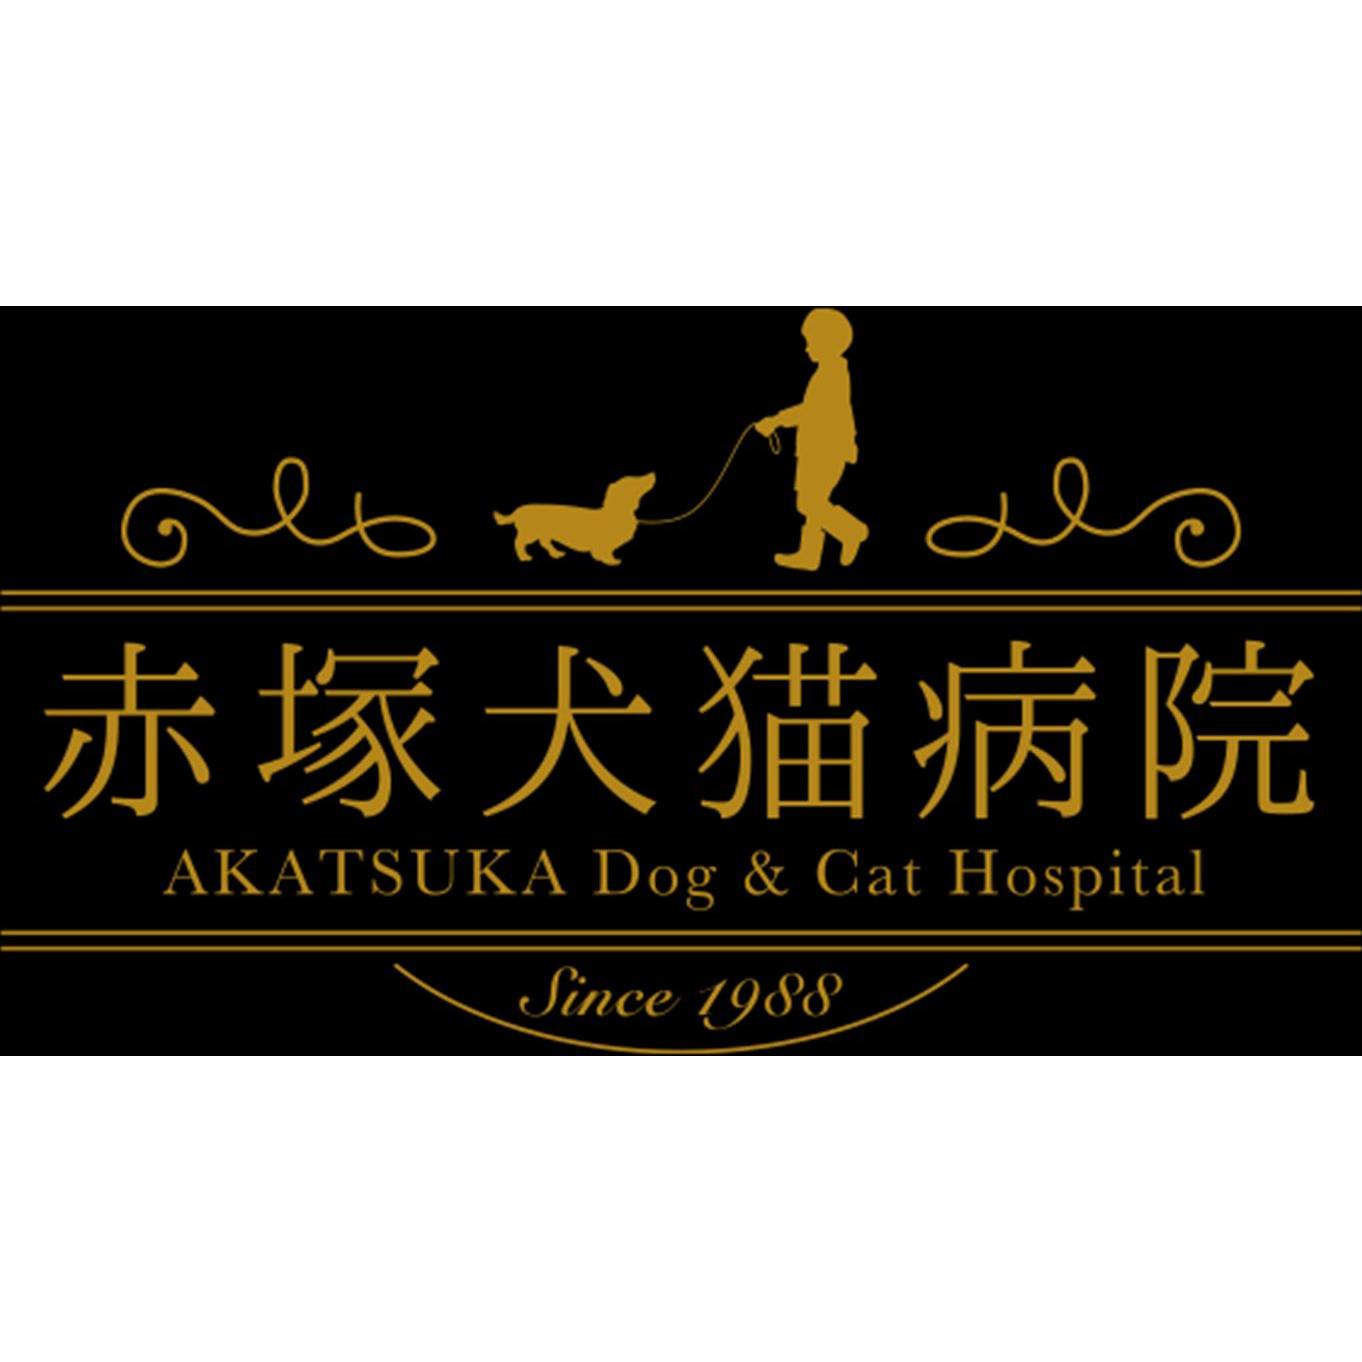 赤塚犬猫病院寺尾院 Logo